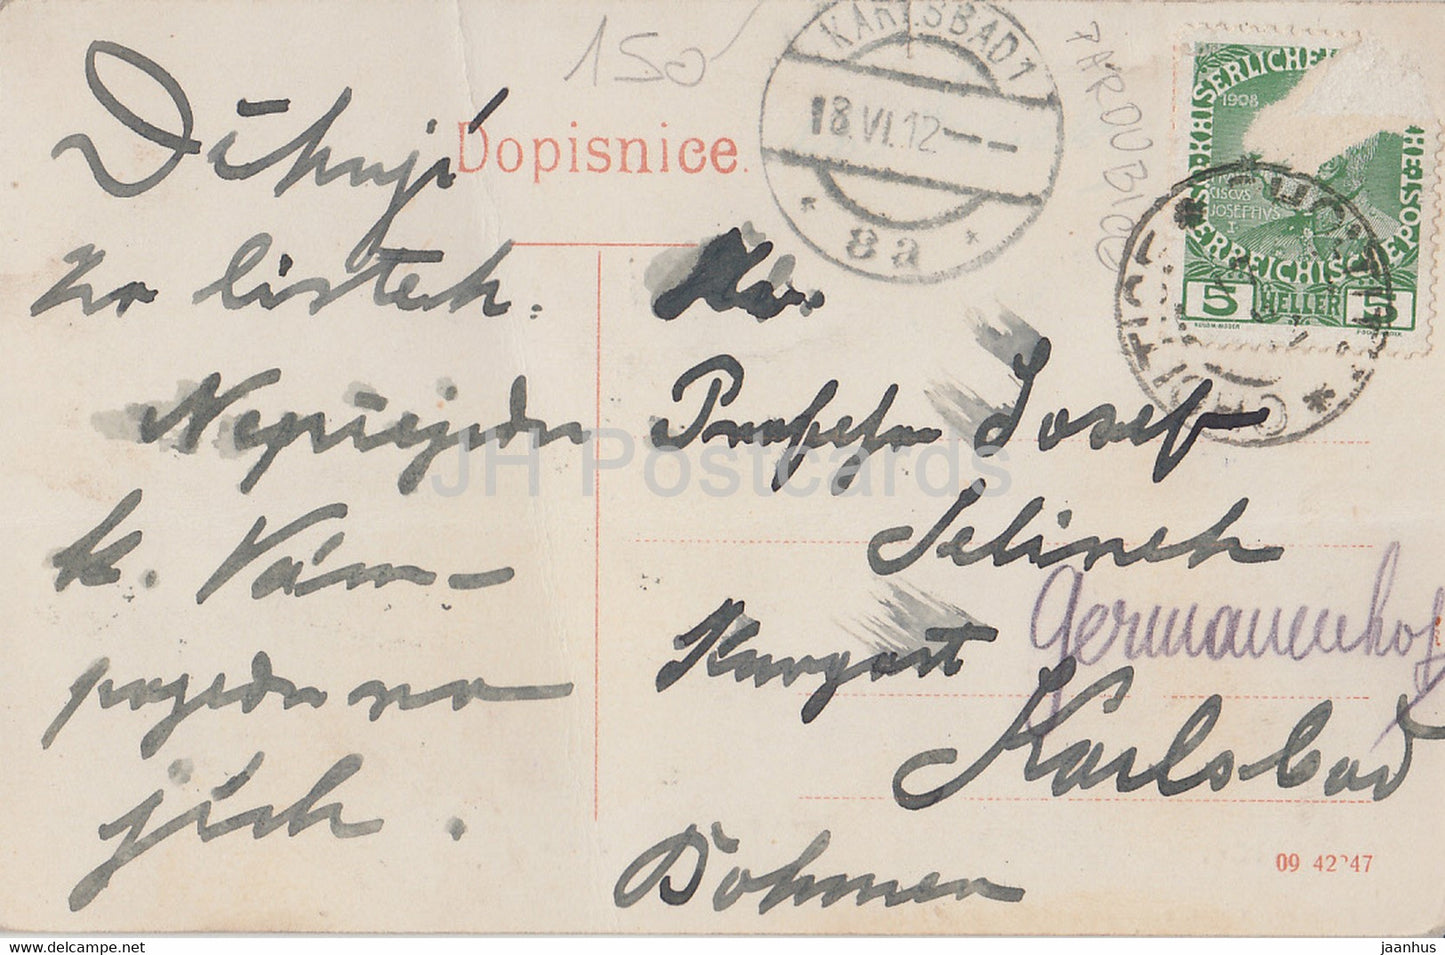 Choltice - Zamek - château - carte postale ancienne - 1912 - République tchèque - utilisé